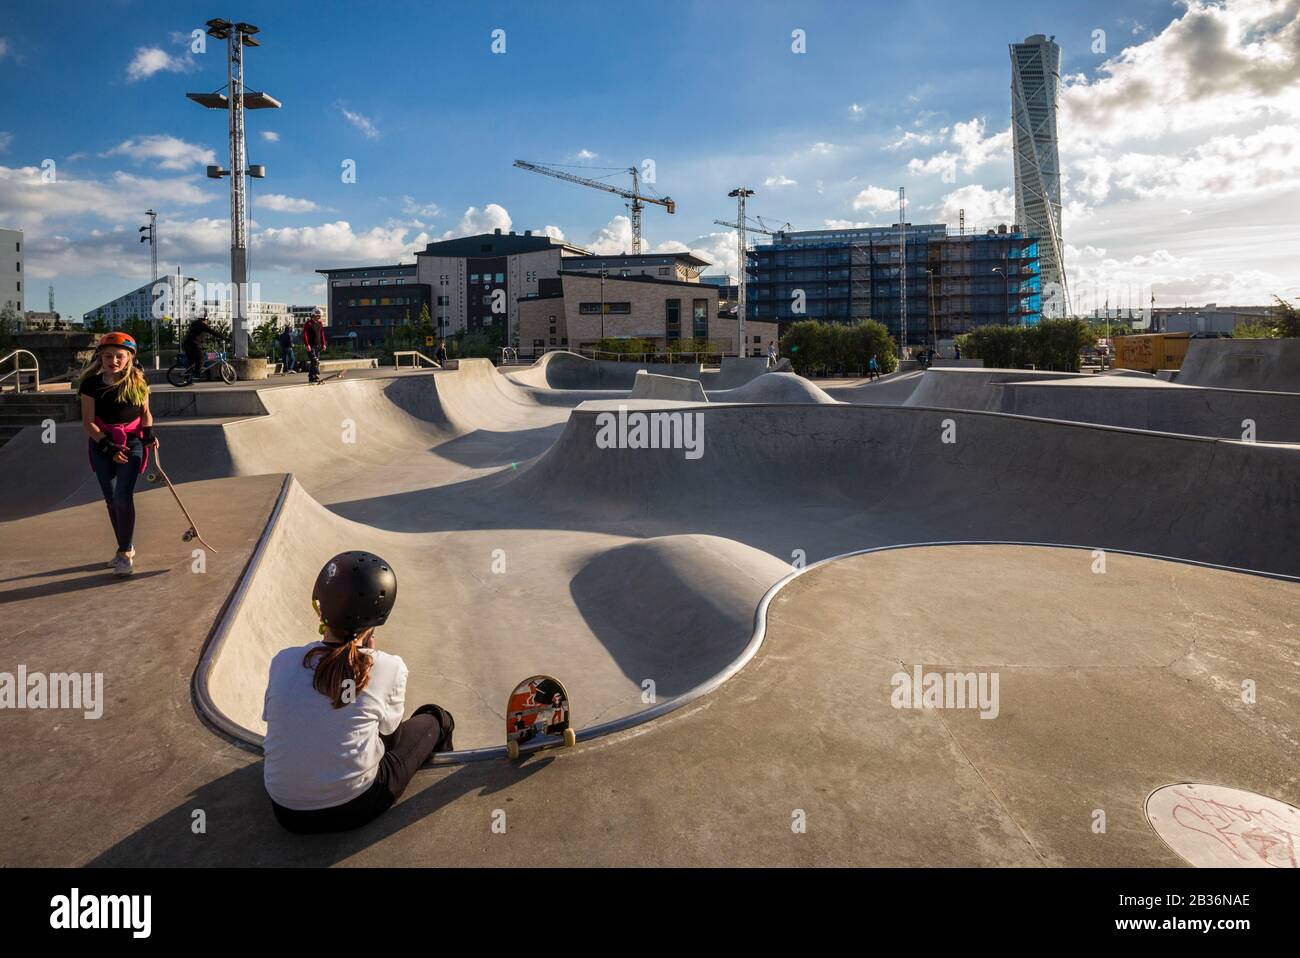 Suède, Scania, Malmo, région de Vastra Hamnen, skate Park avec skater Photo  Stock - Alamy